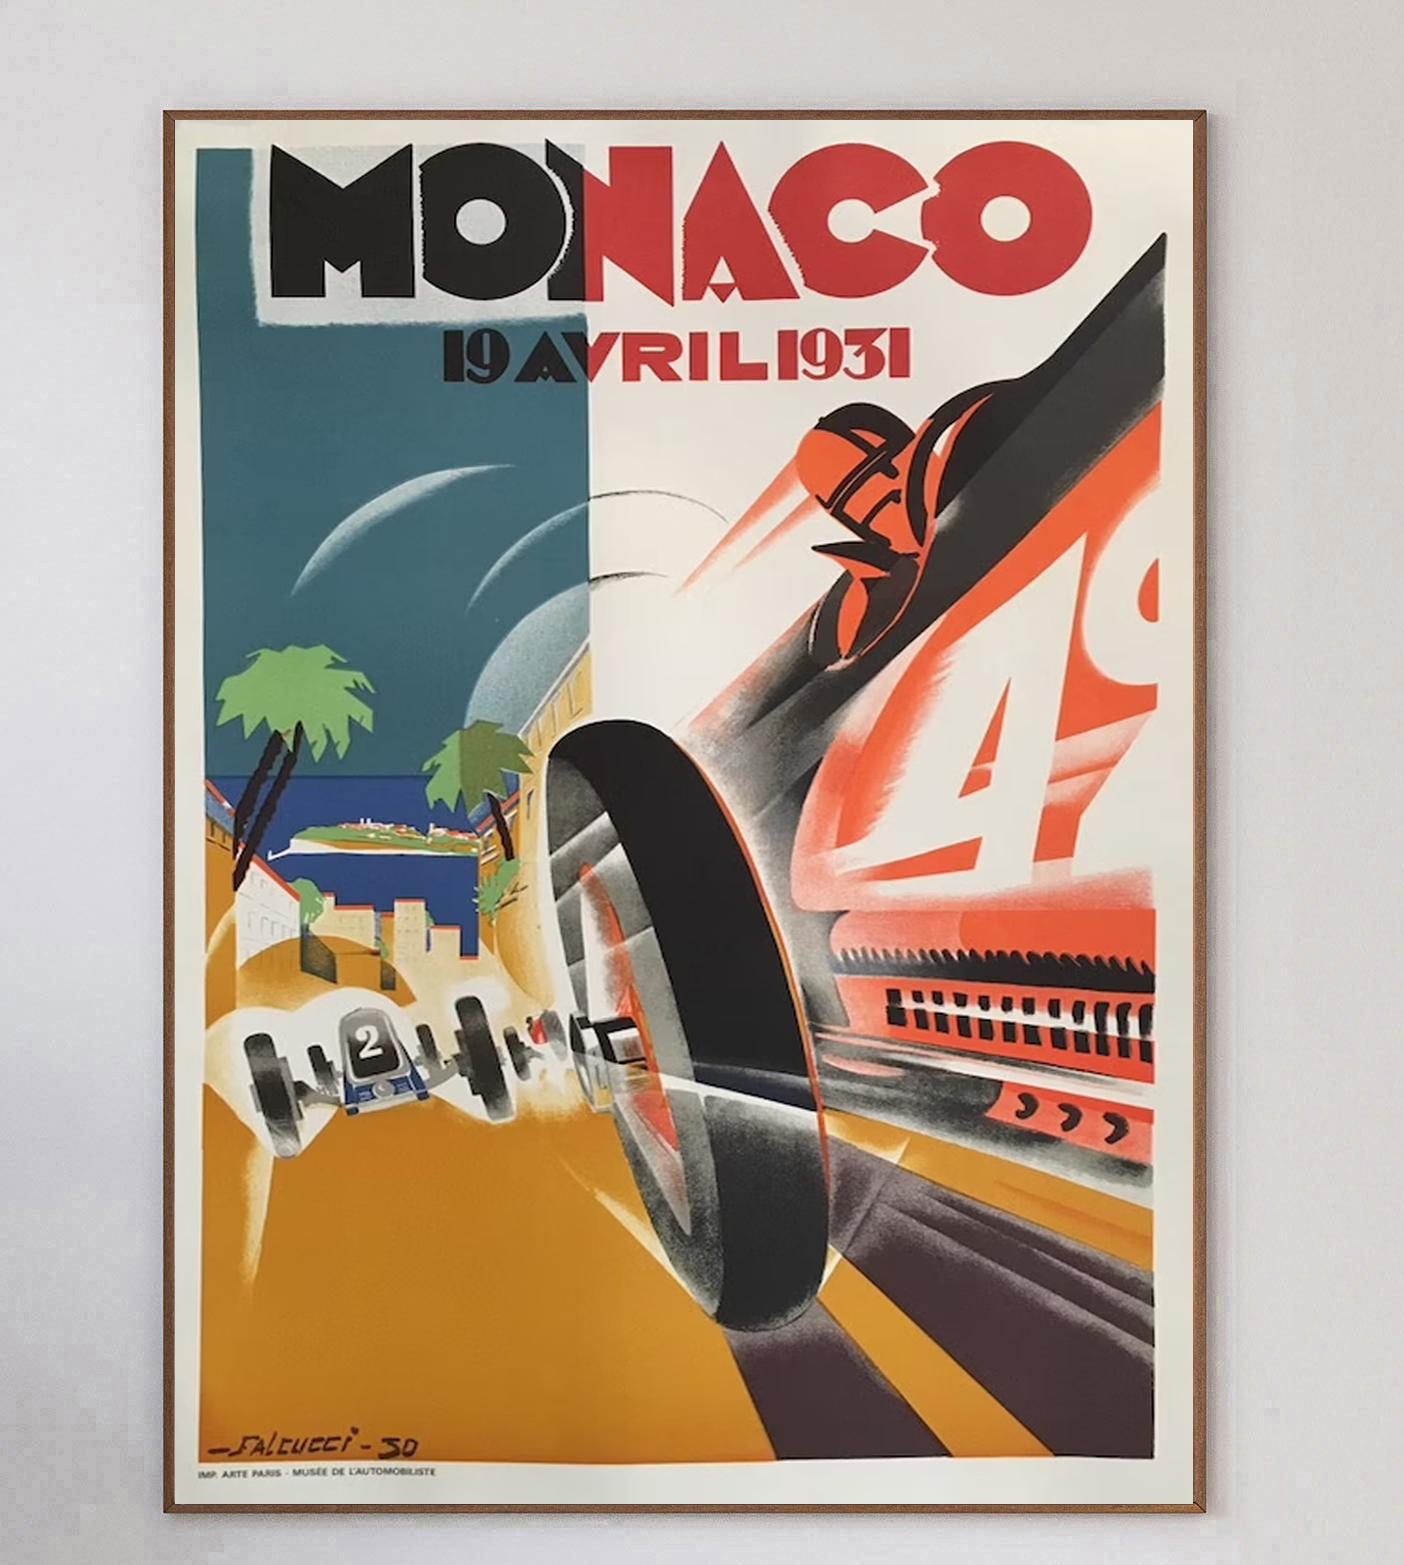 Cette affiche est celle du Grand Prix de Monaco de 1931, avec la brillante illustration de l'artiste Robert Falcucci. L'image représente une voiture rouge roulant à vive allure et échappant à une voiture blanche, dans des couleurs vives et un style